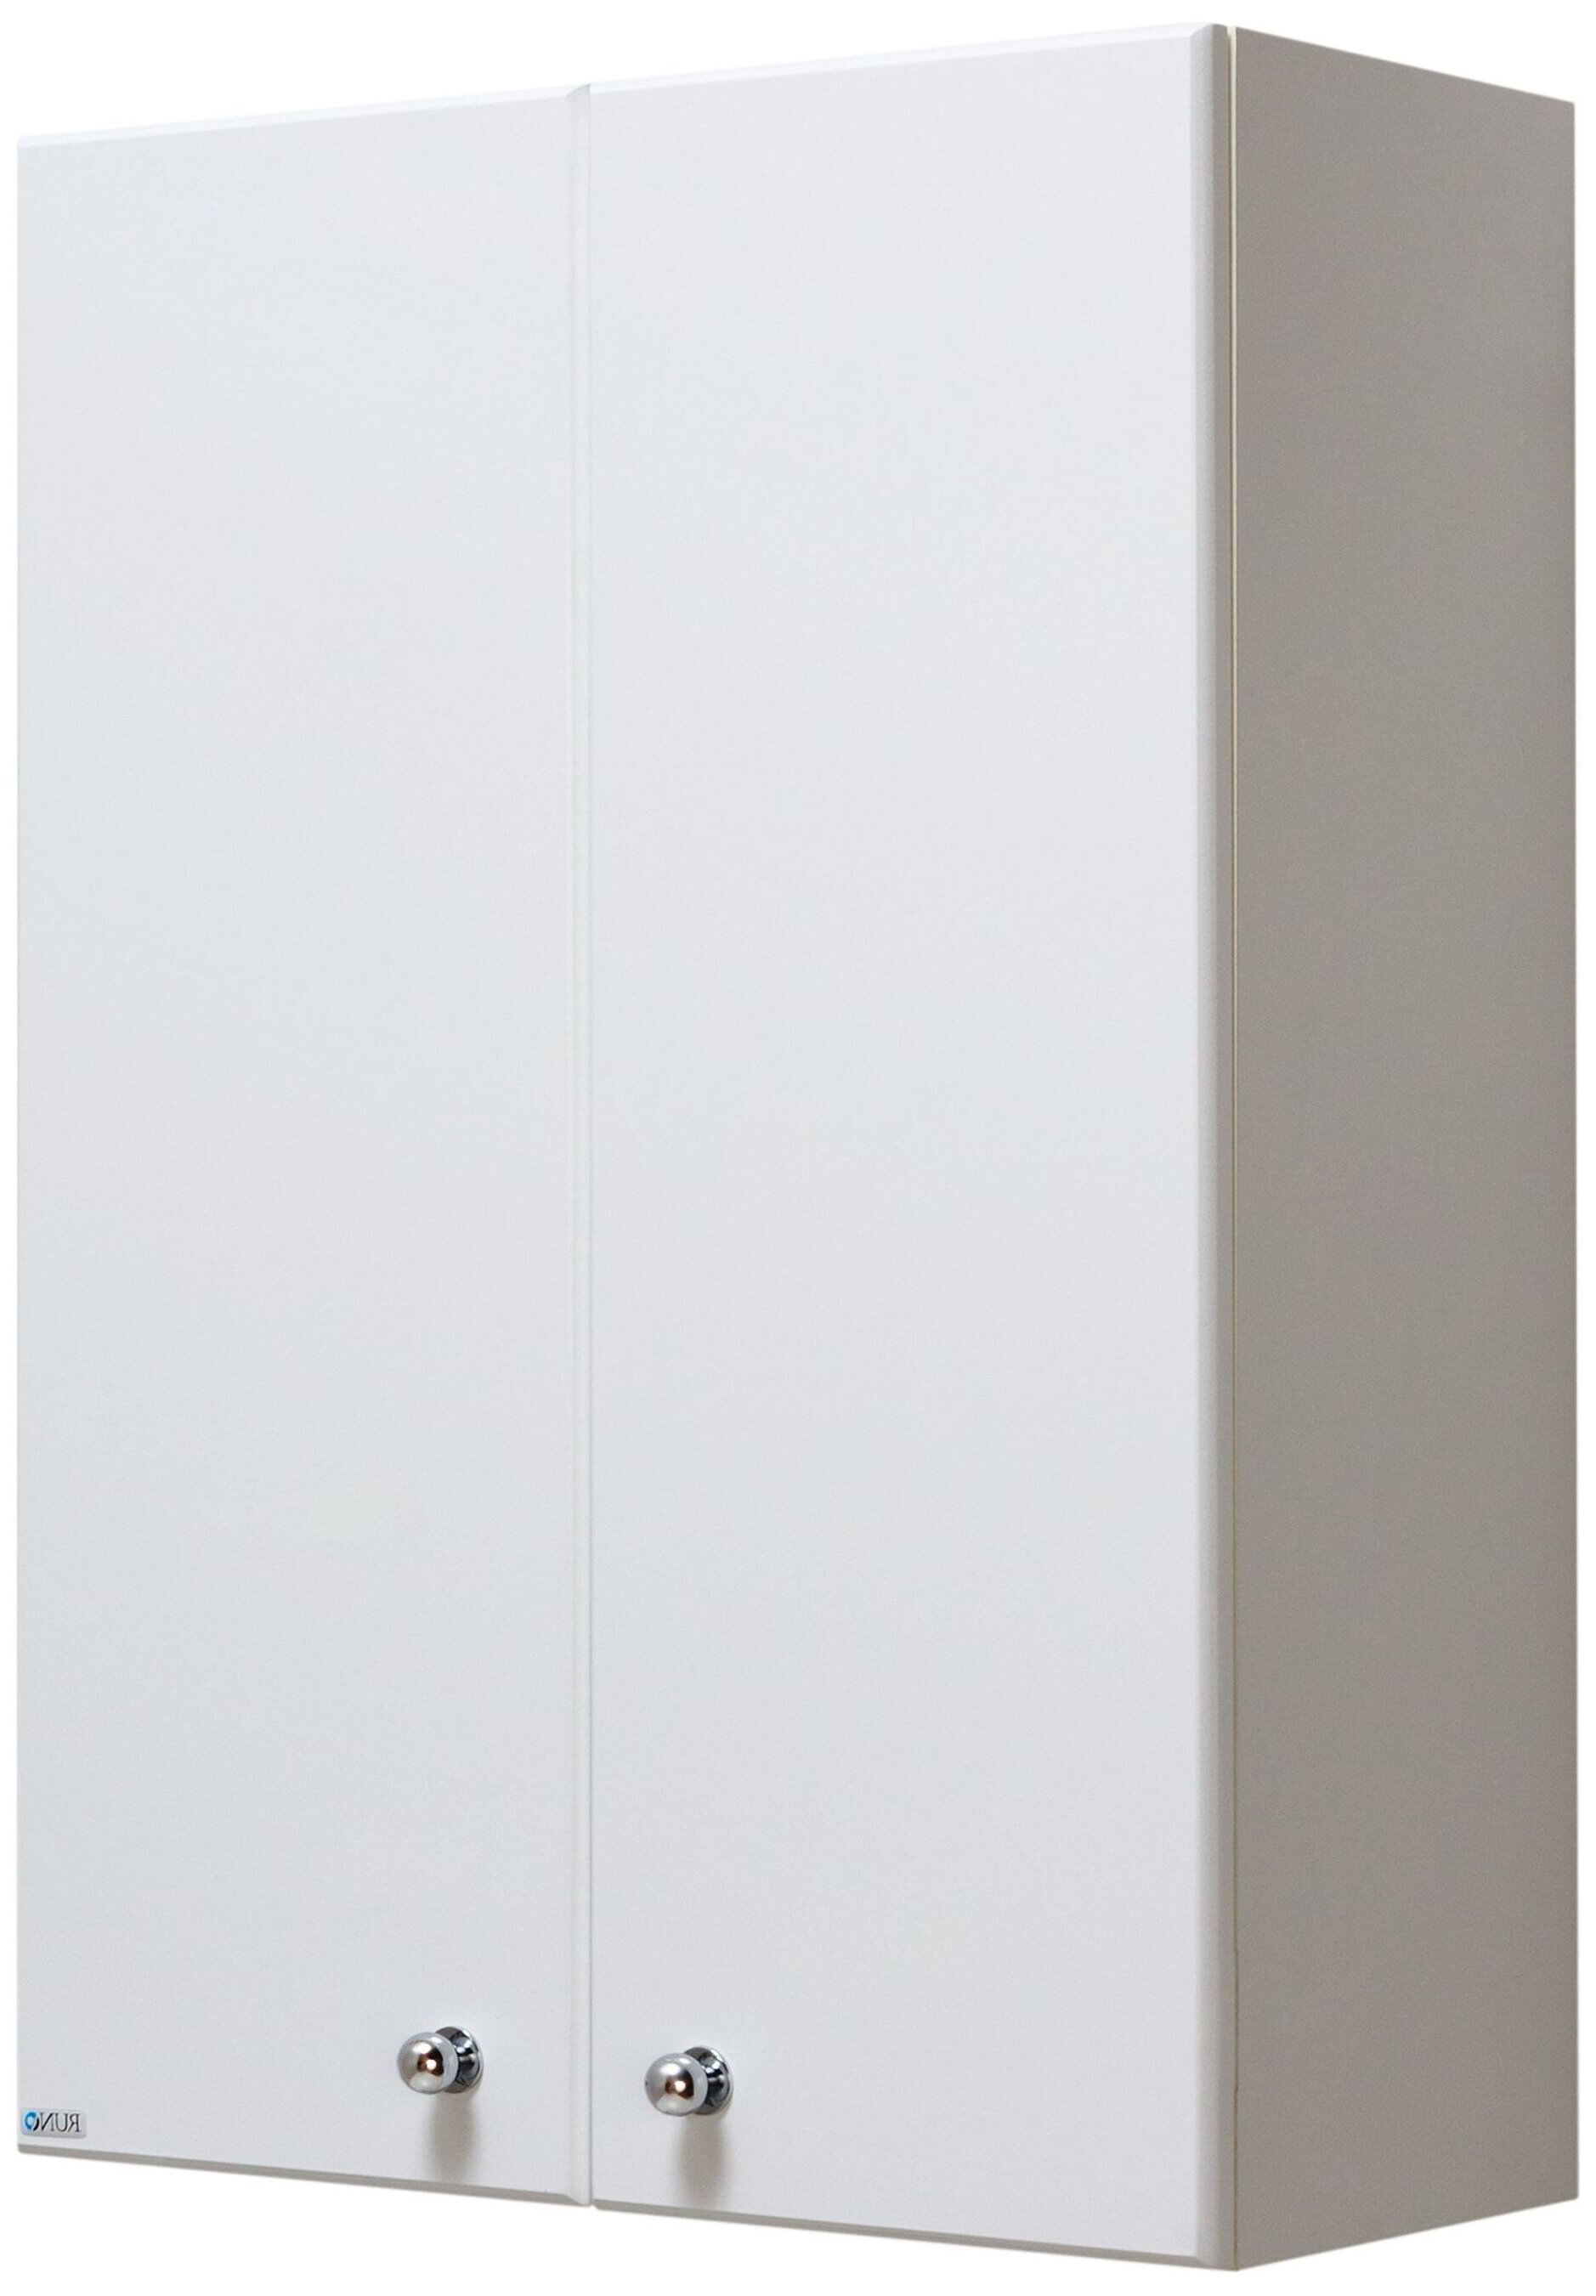 Шкаф навесной универсальный Runo эконом Кредо 75х60 см МДФ белый